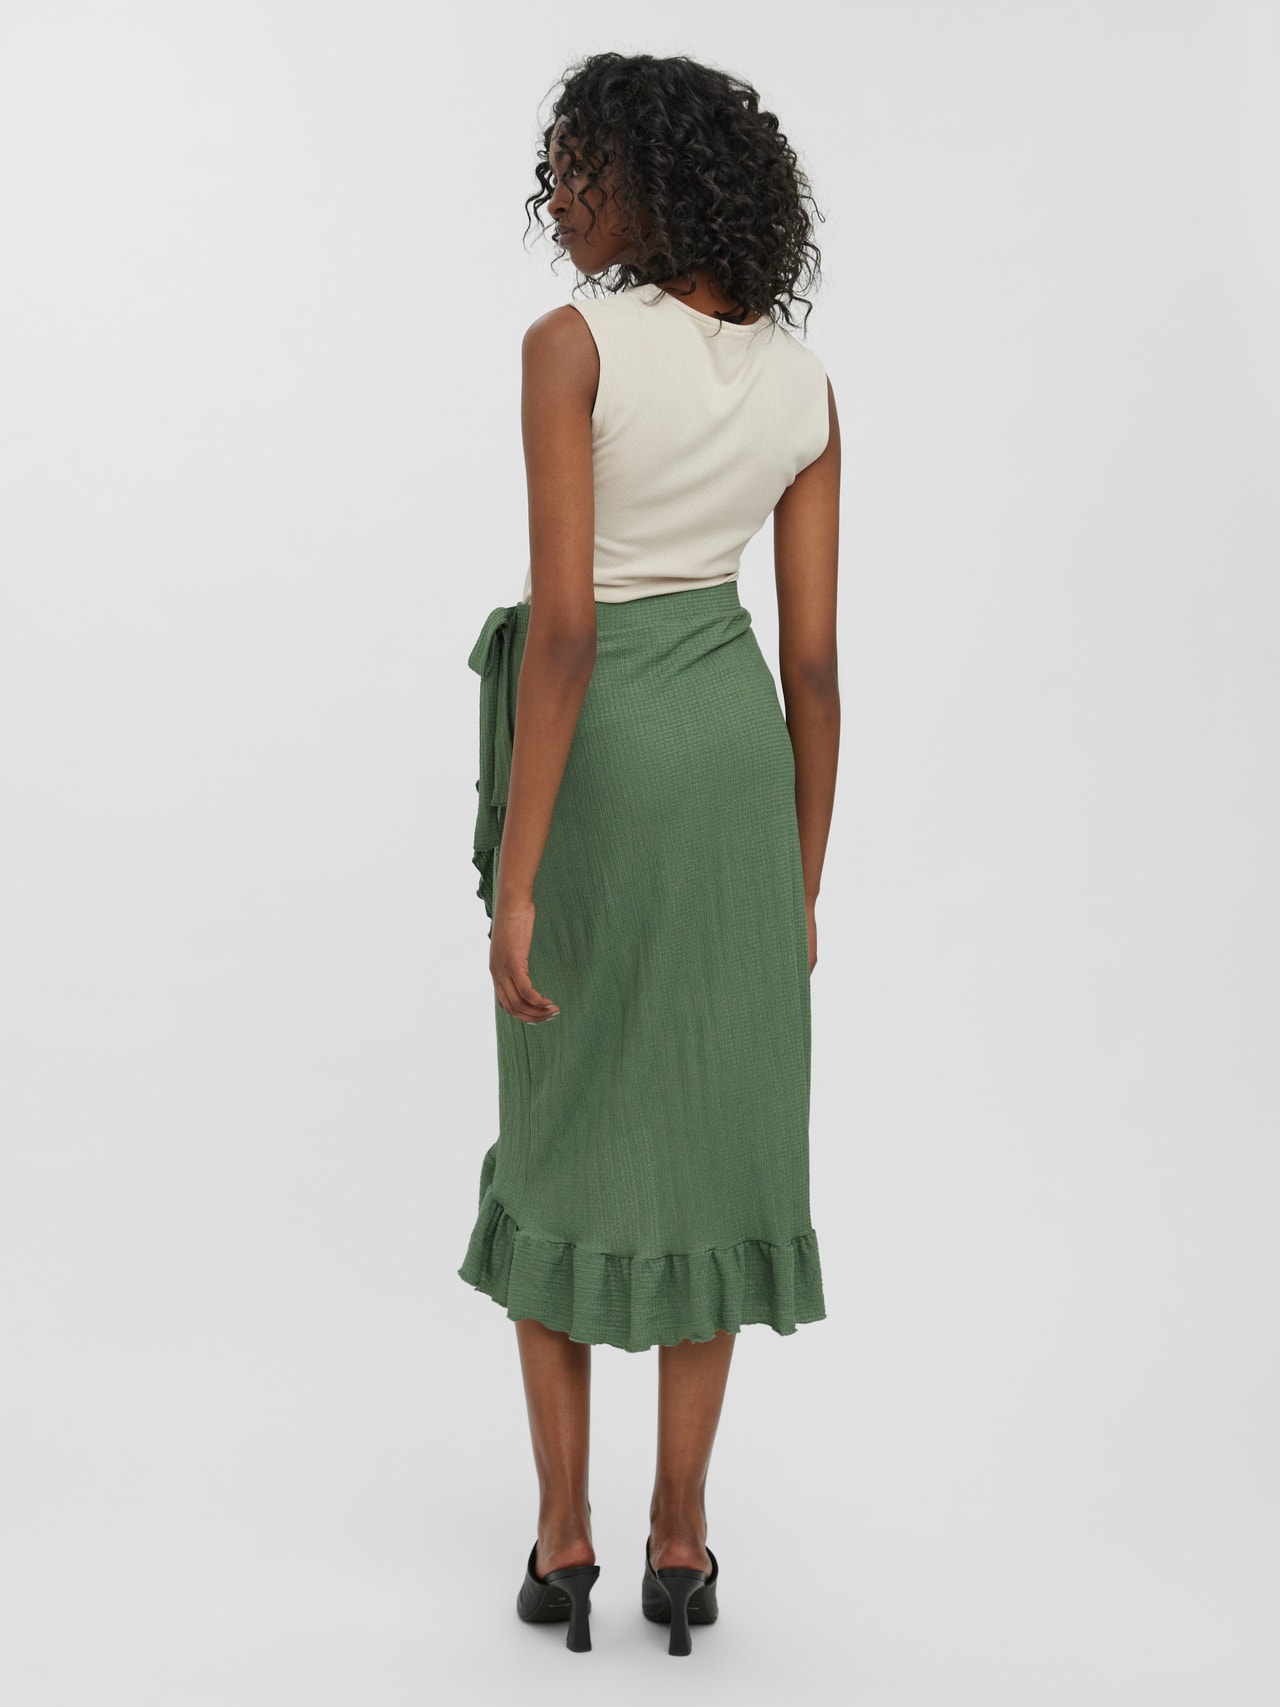 Ledig Hvad er der galt vigtigste Long skirt with 20% discount! | Vero Moda®